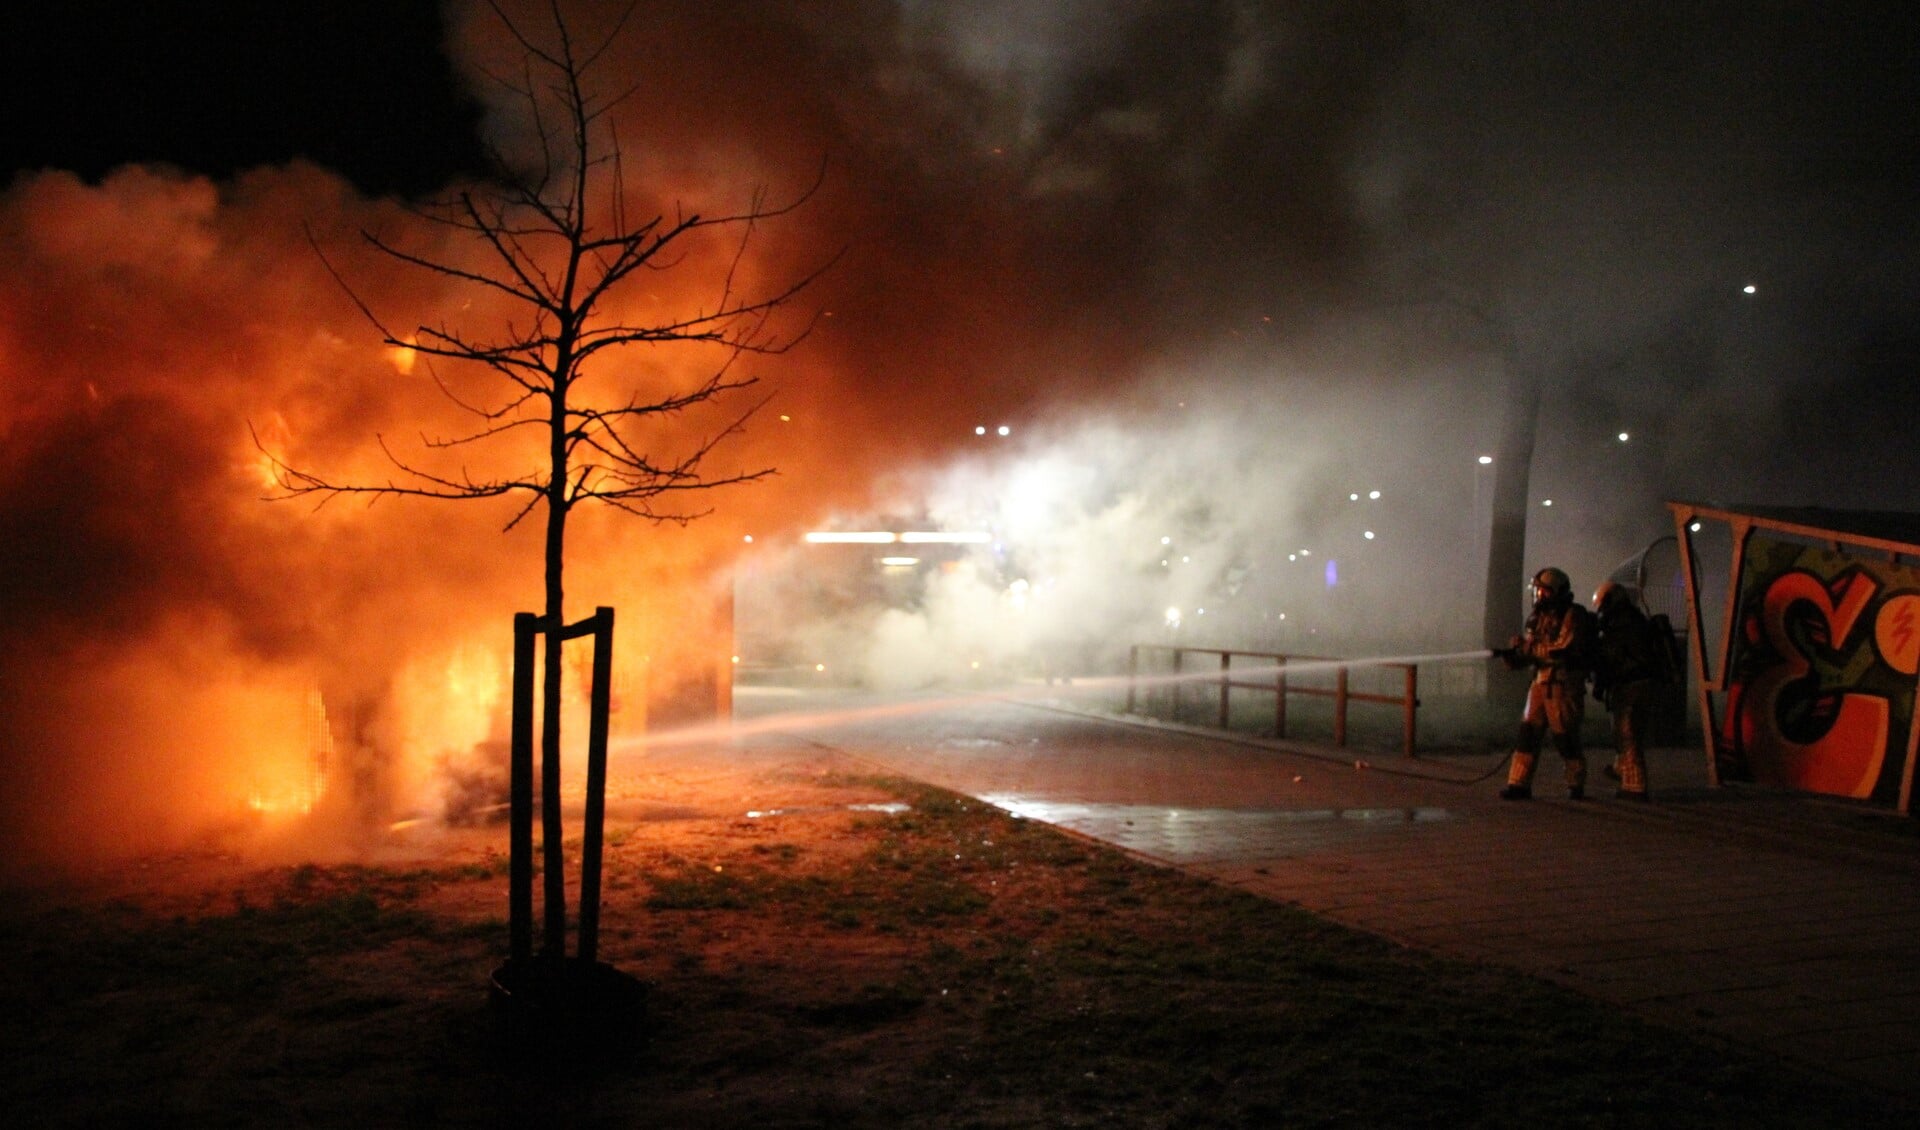 De brandweer blust de brand bij jongerencentrum Impuls in Eemnes.